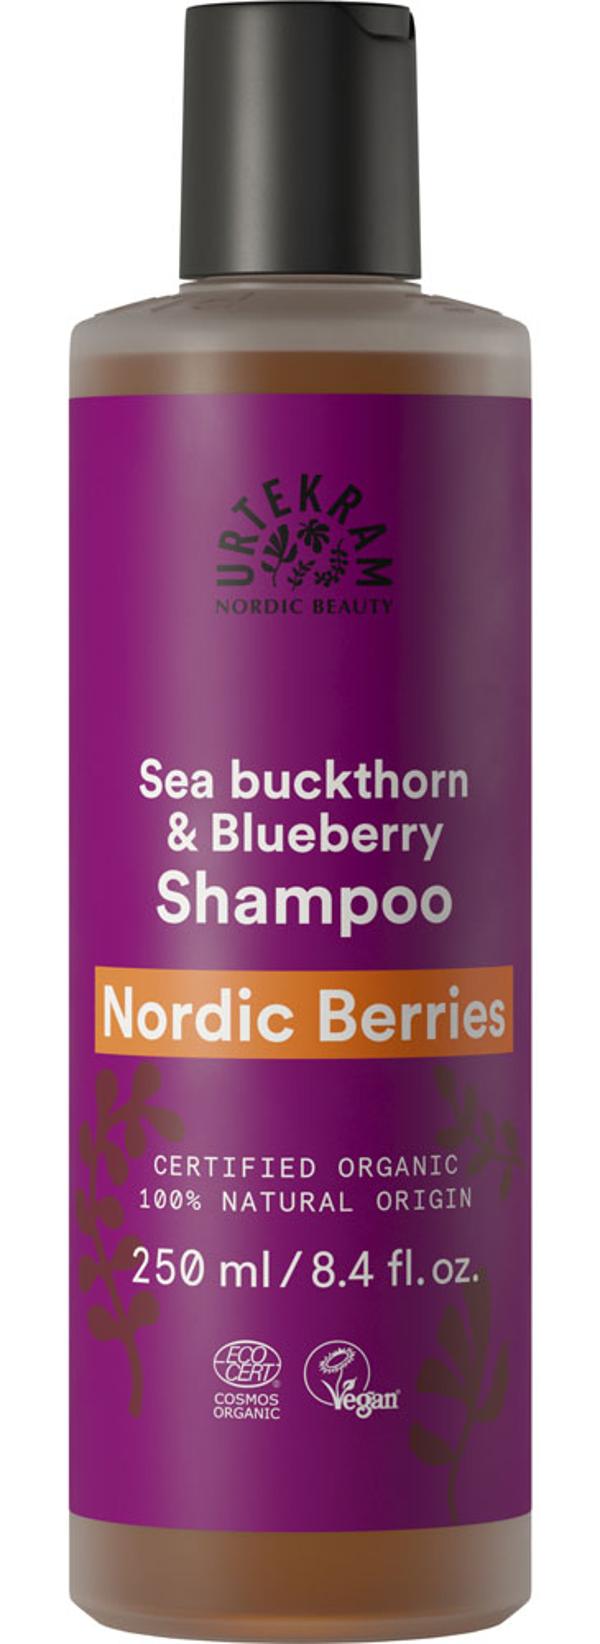 Produktfoto zu Urtekram Nordische Beeren Shampoo 250ml